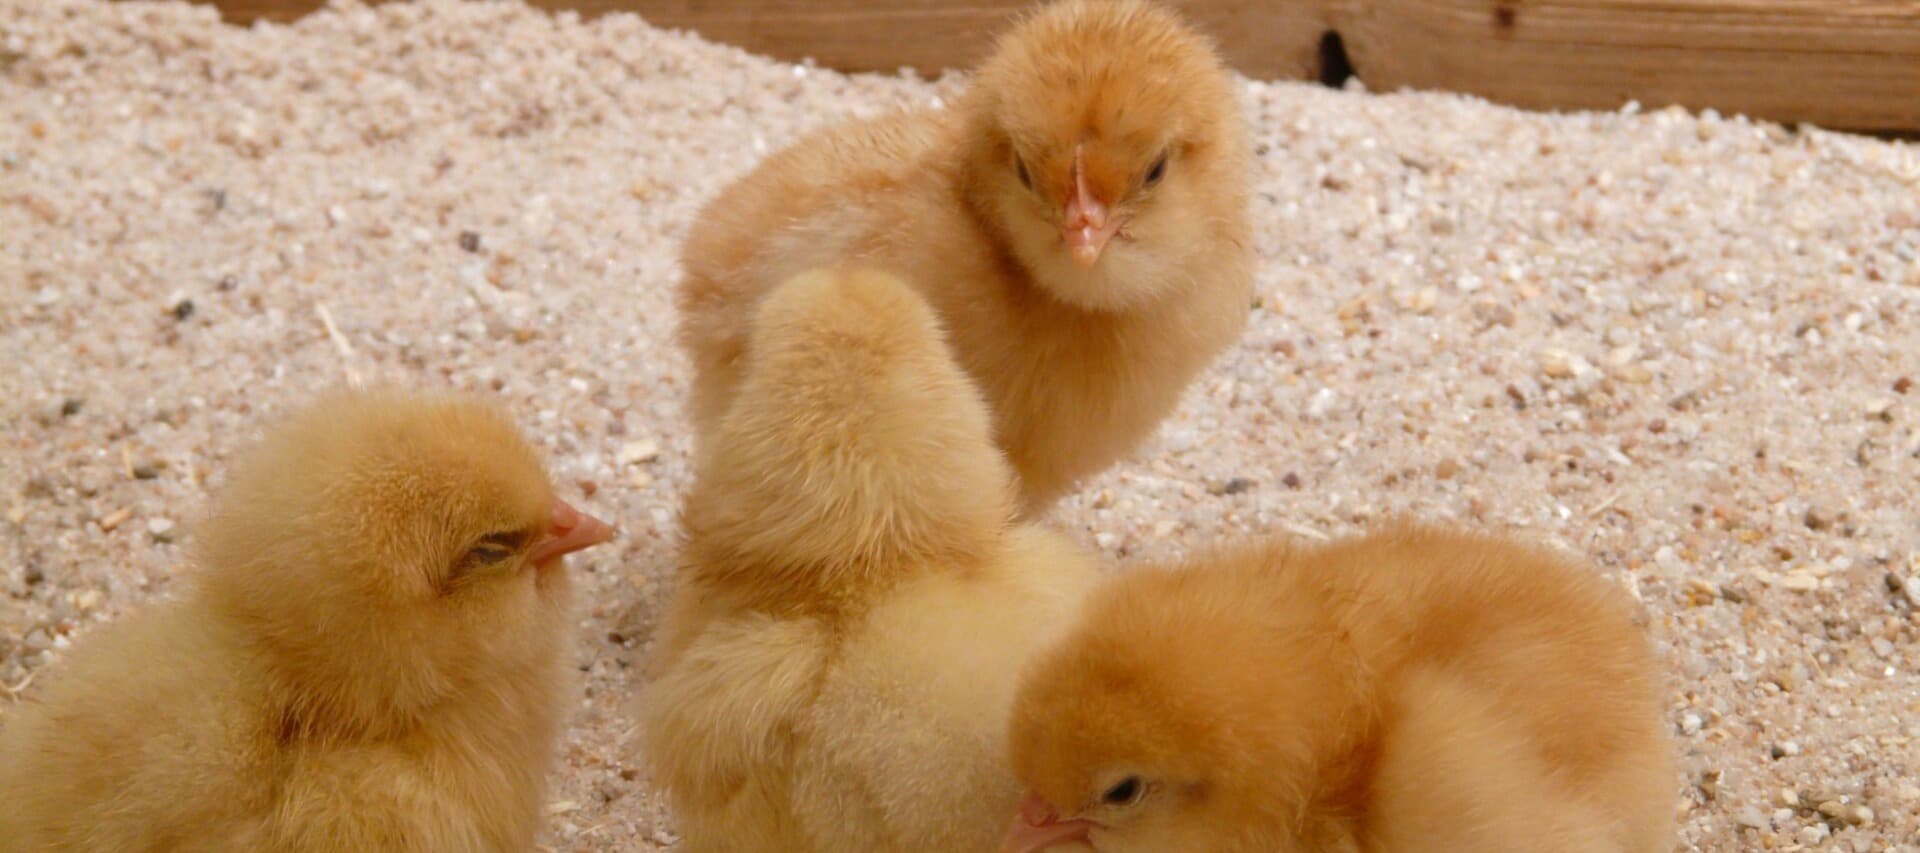 Фото новости: "Крупнейший производитель курятины подал в суд на Минсельхоз"